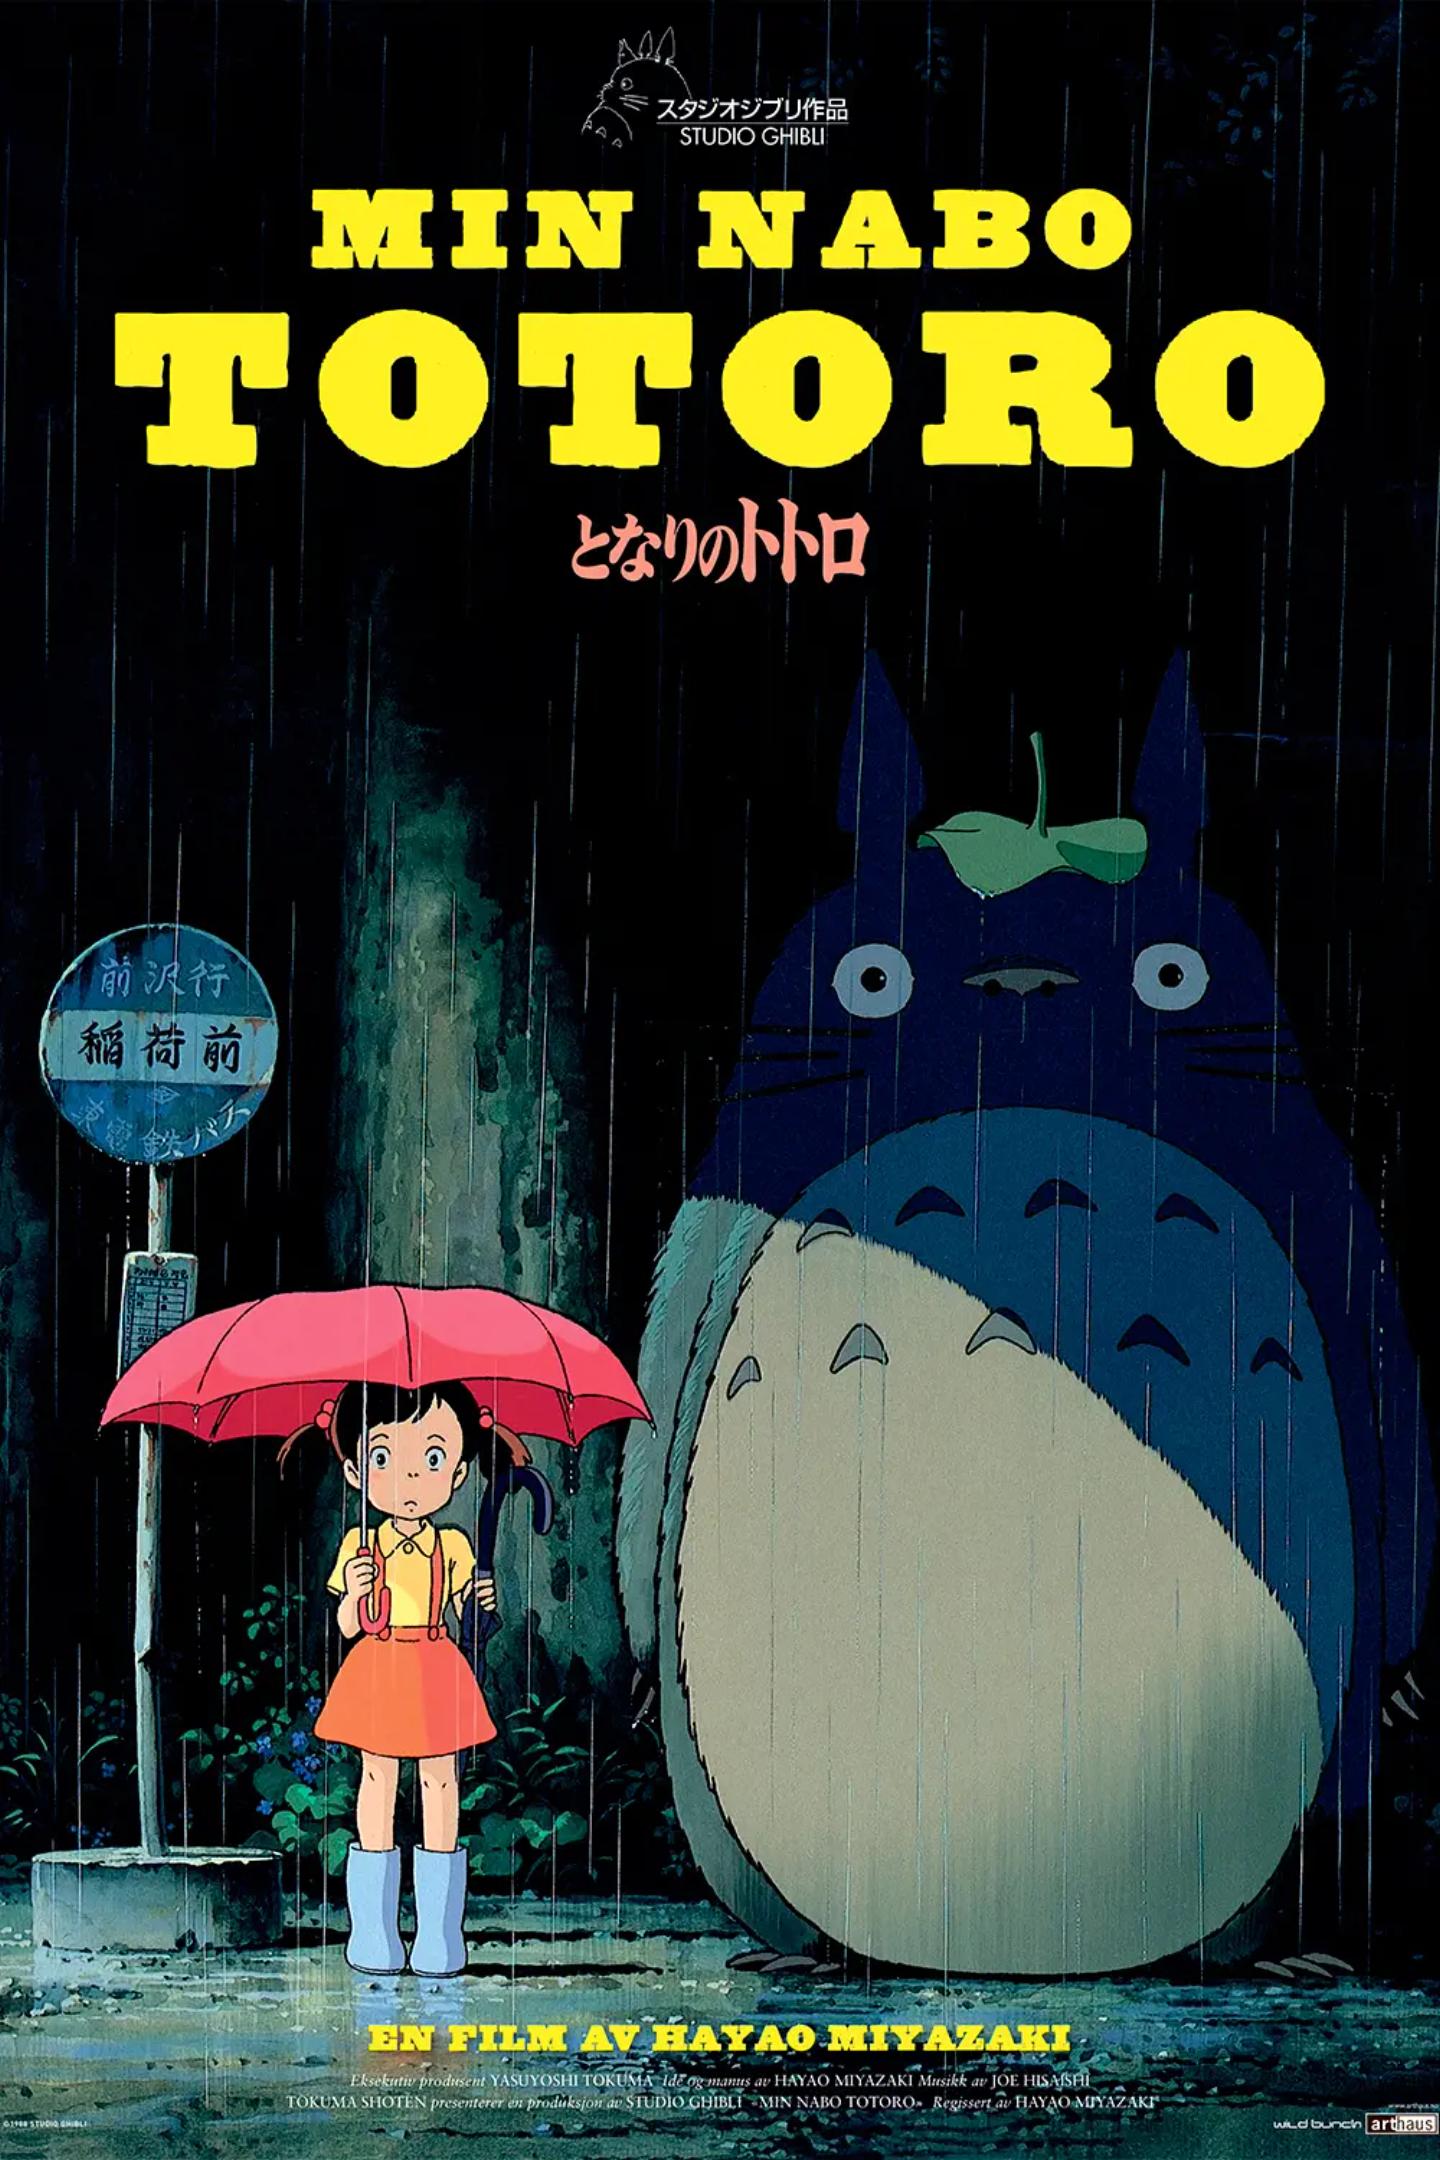 Plakat for 'Min nabo Totoro'